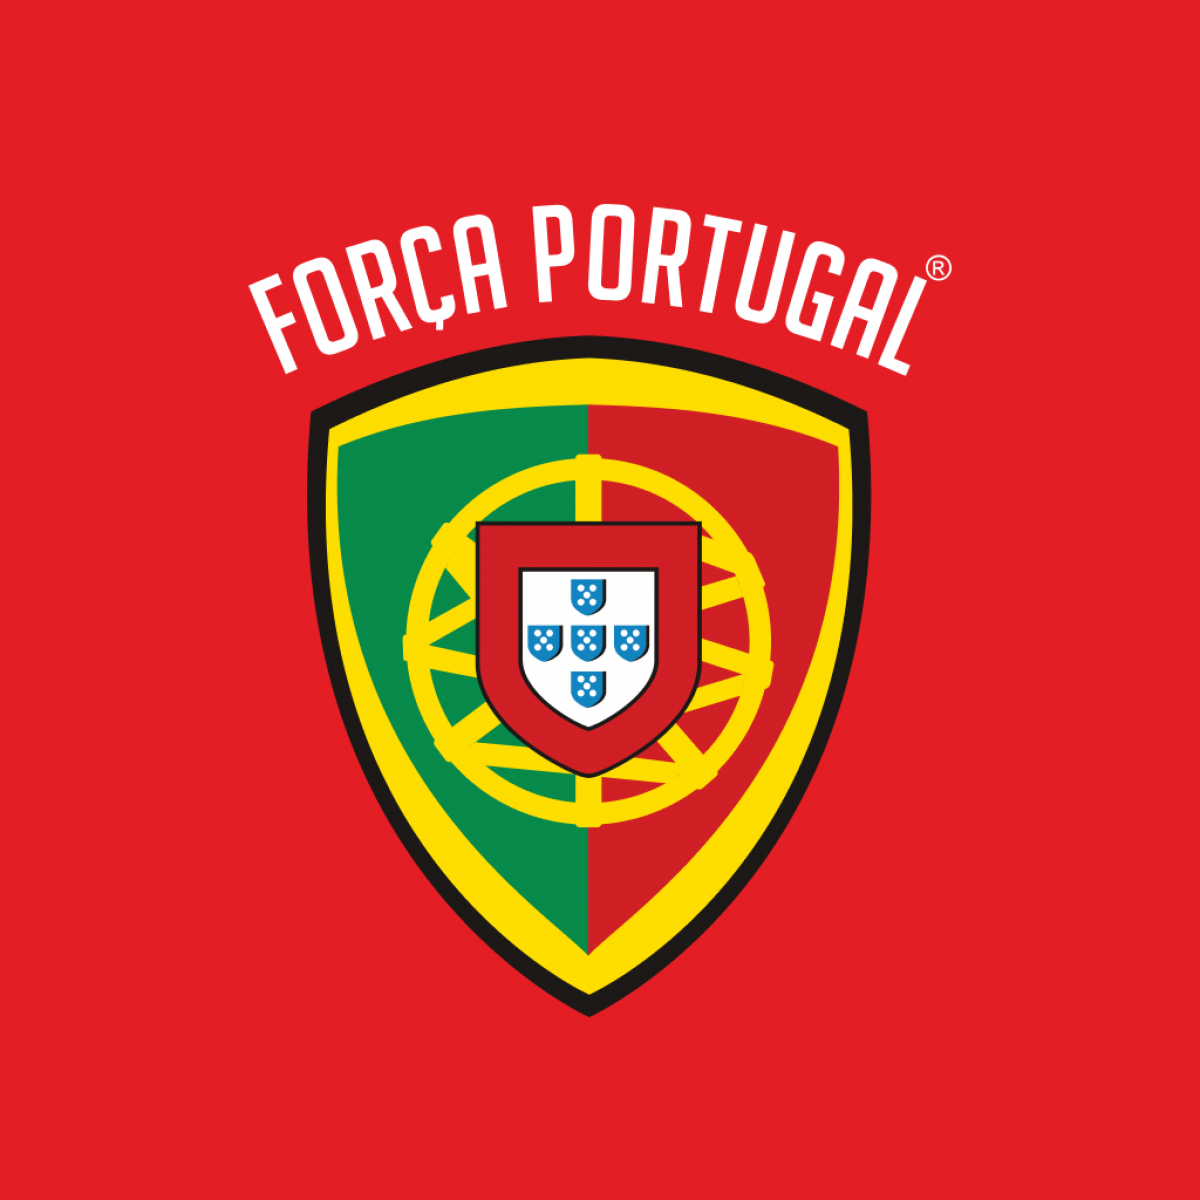 LOT DE 6 - porte-clé foot Portugal 1,00€/unité